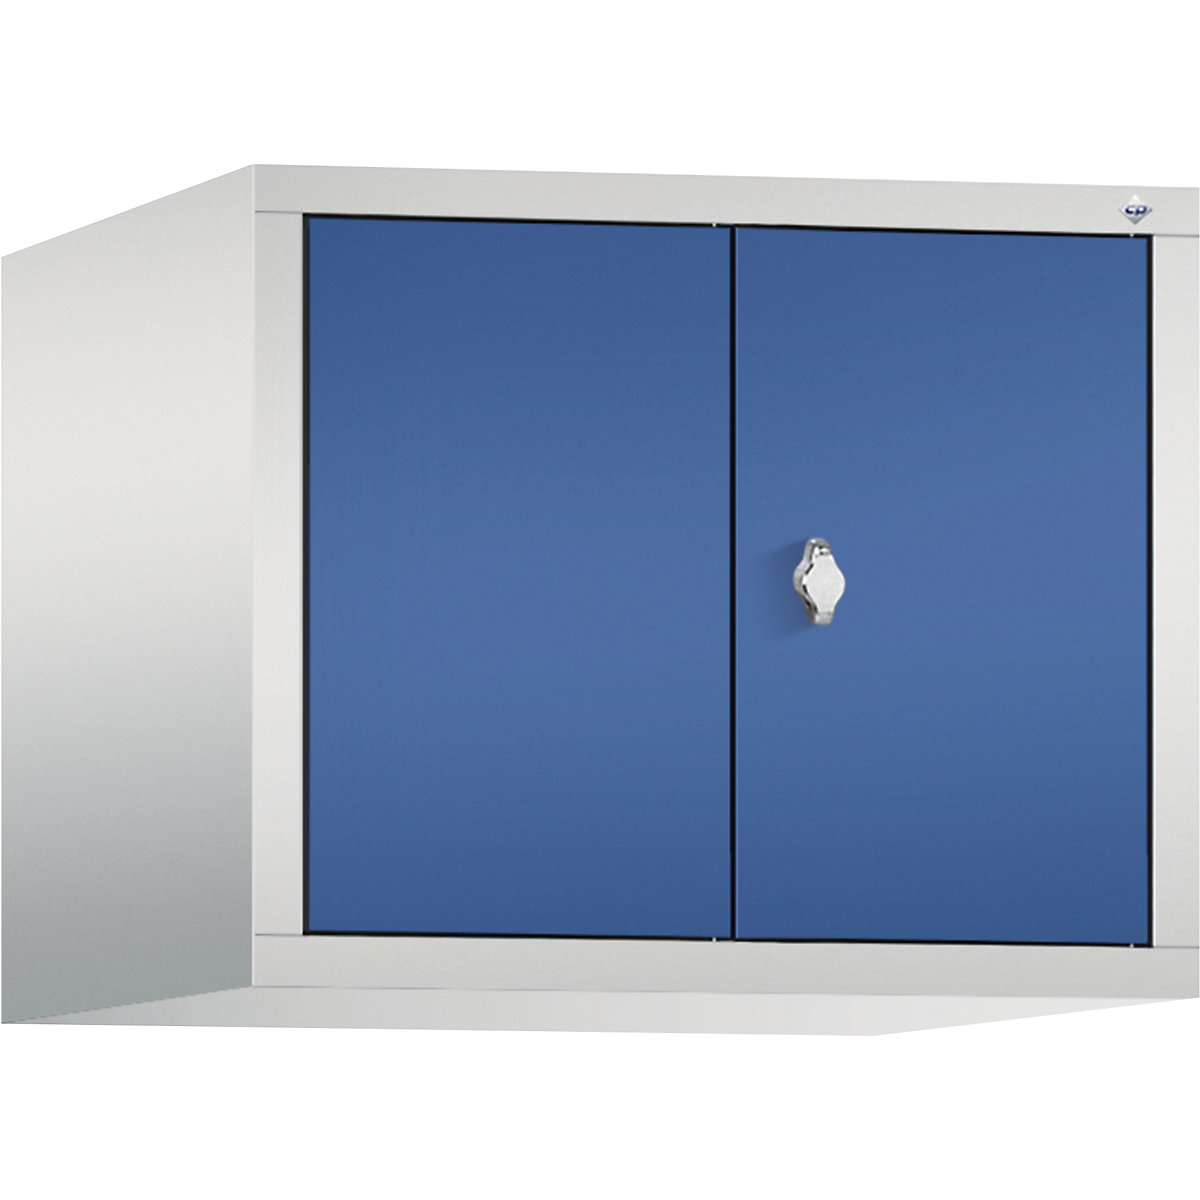 C+P – Altillo CLASSIC, puertas batientes que cierran al ras entre sí, 2 compartimentos, anchura de compartimento 300 mm, gris luminoso / azul genciana